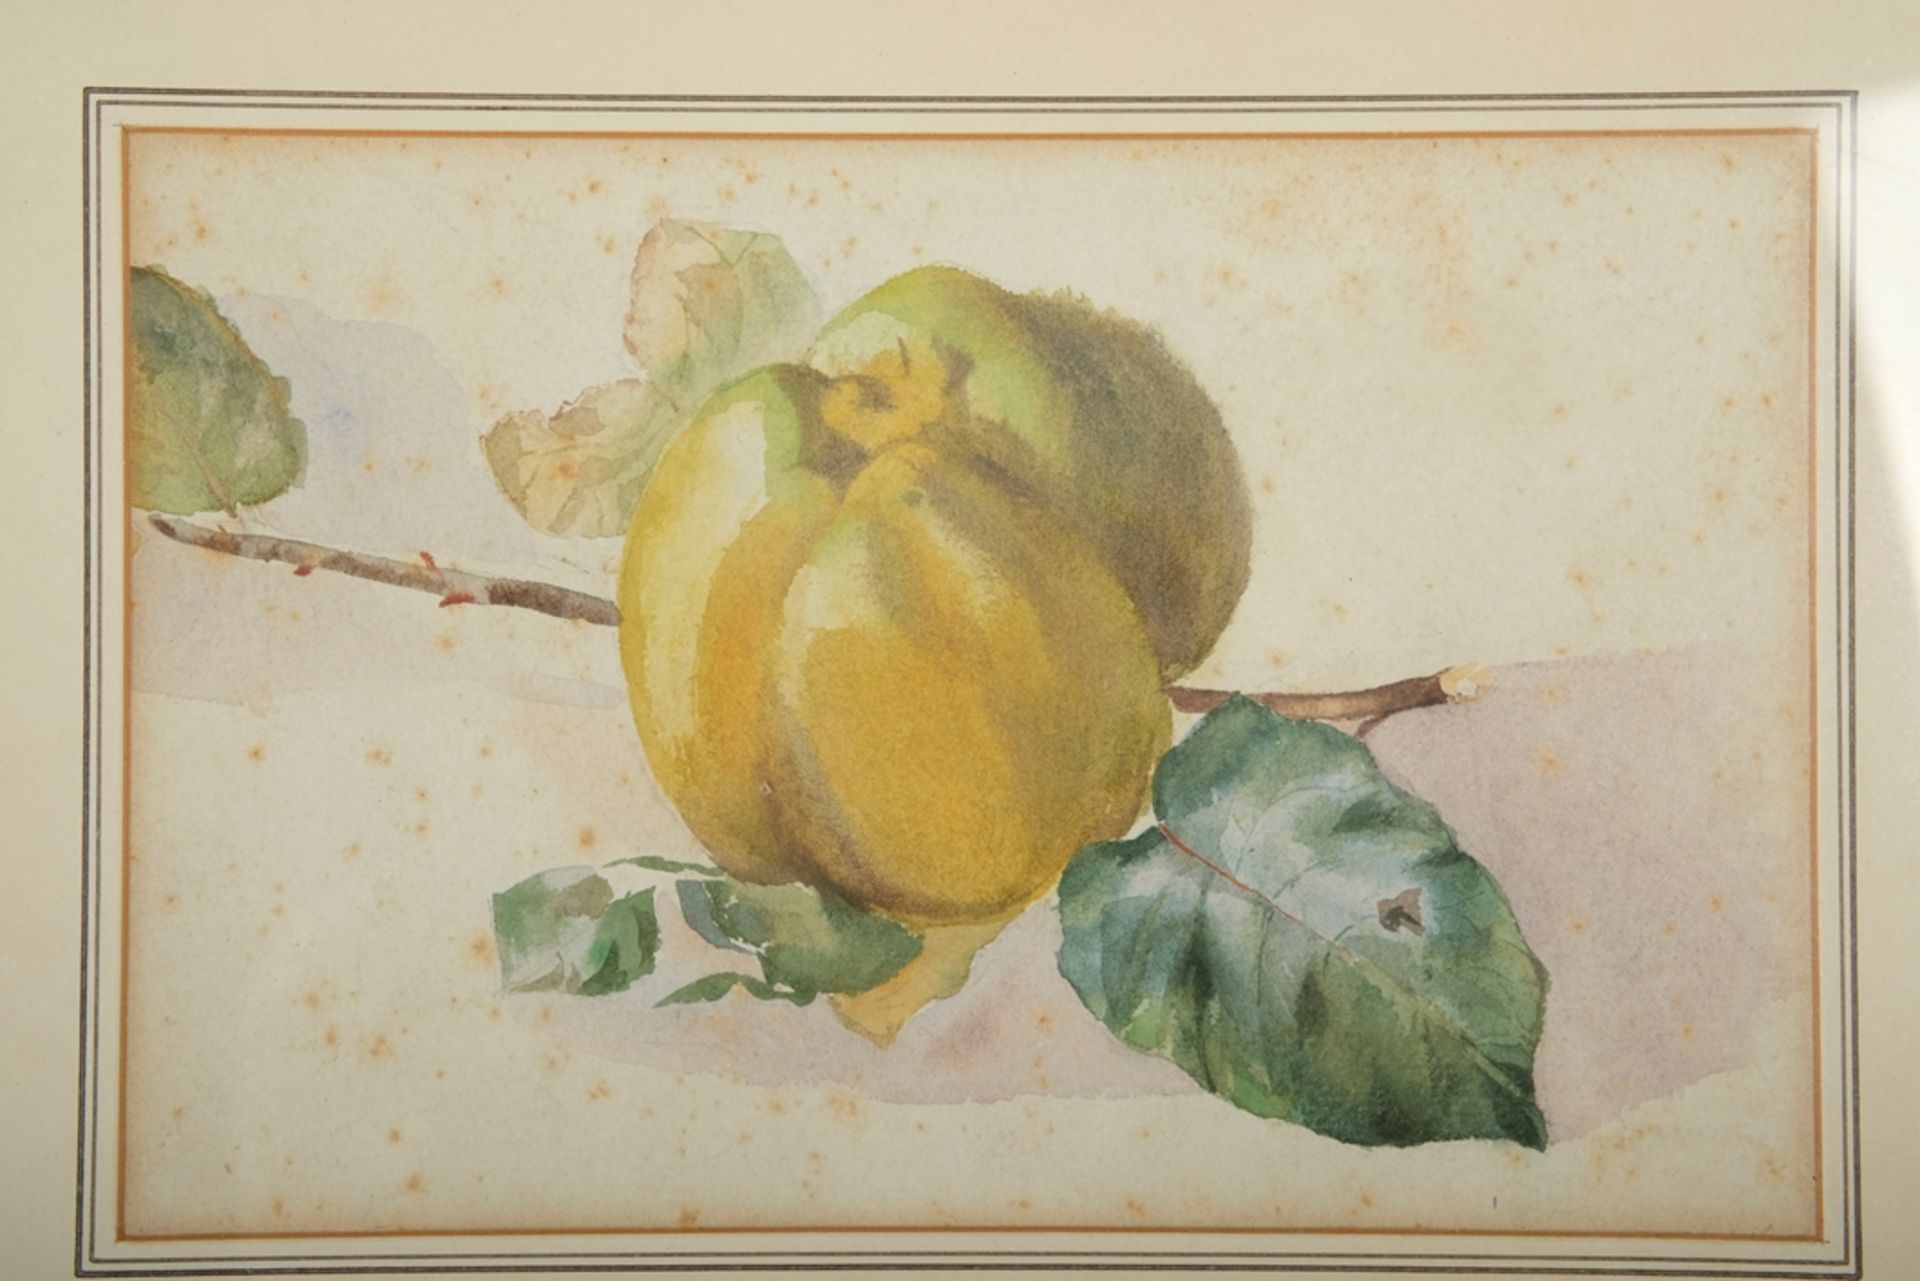 BIEDERT Hans (1878-1929) "Quitte", Aquarell. Sichtbarer Ausschnitt 14,5 x 22 cm, PP, R 24 x 32 cm.